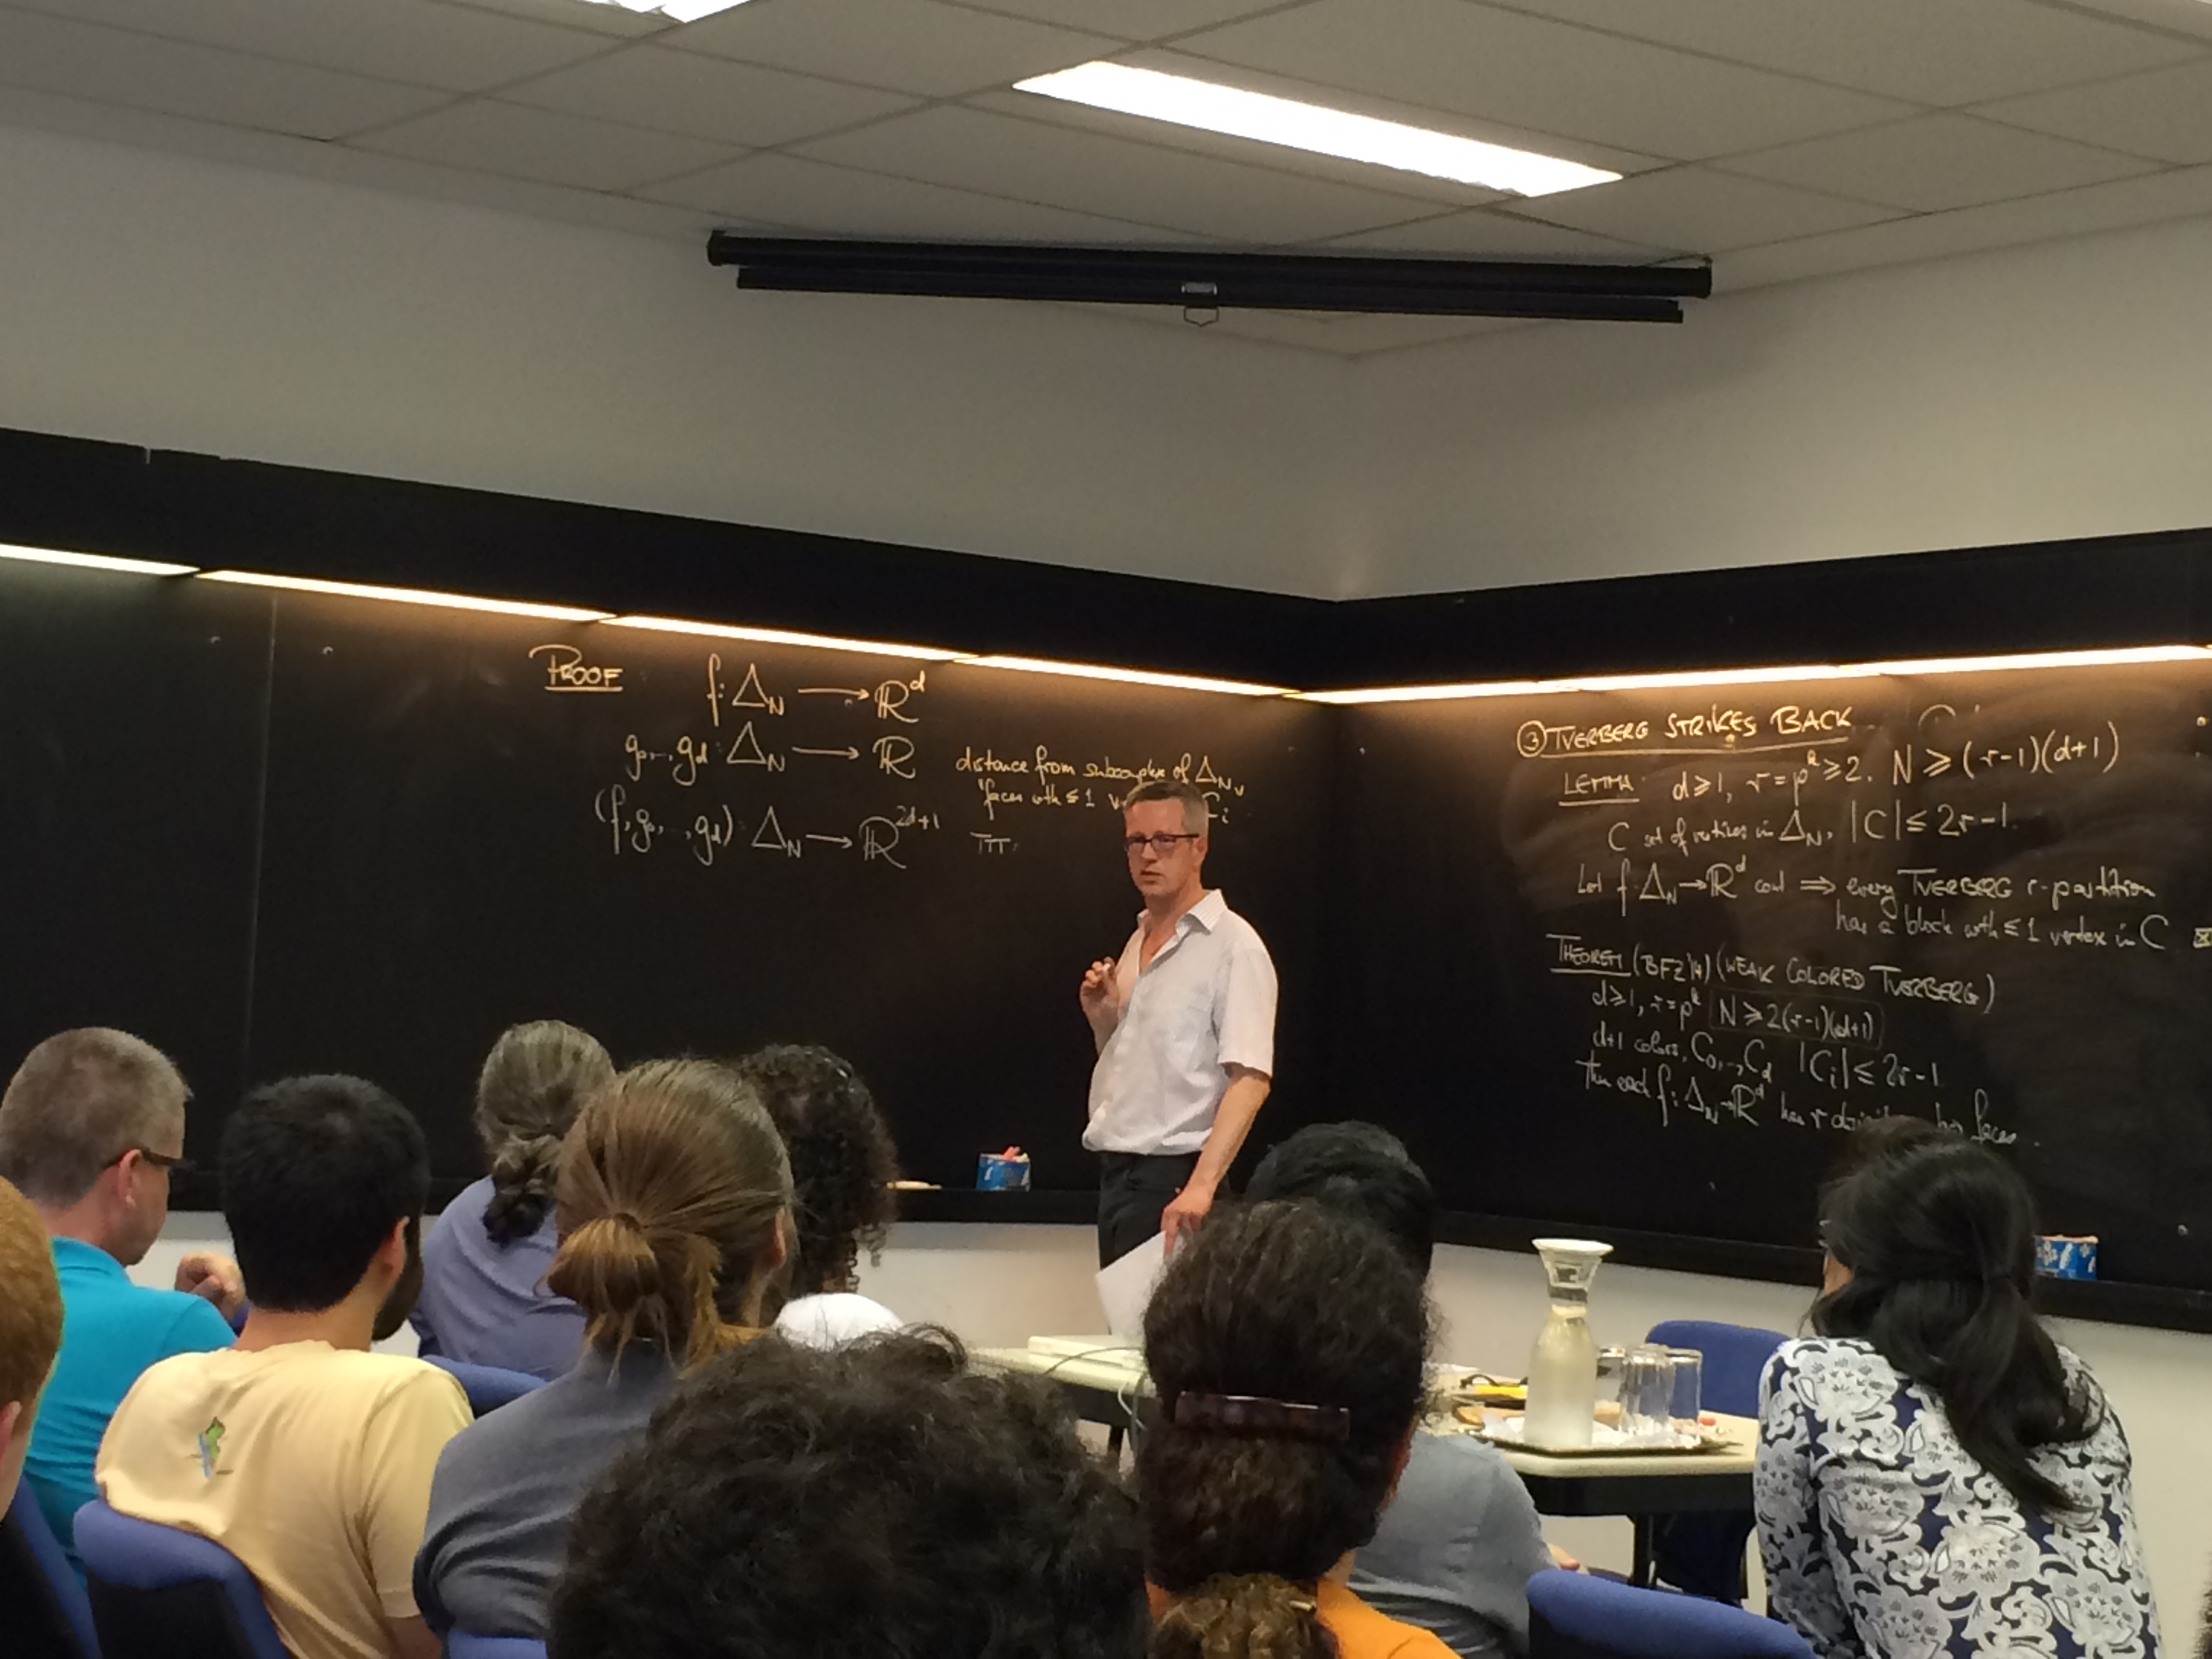 Professor Ziegler vor einer großen Tafel mit mehreren mathematischen Formeln stellt seine Lecture dem Publikum vor